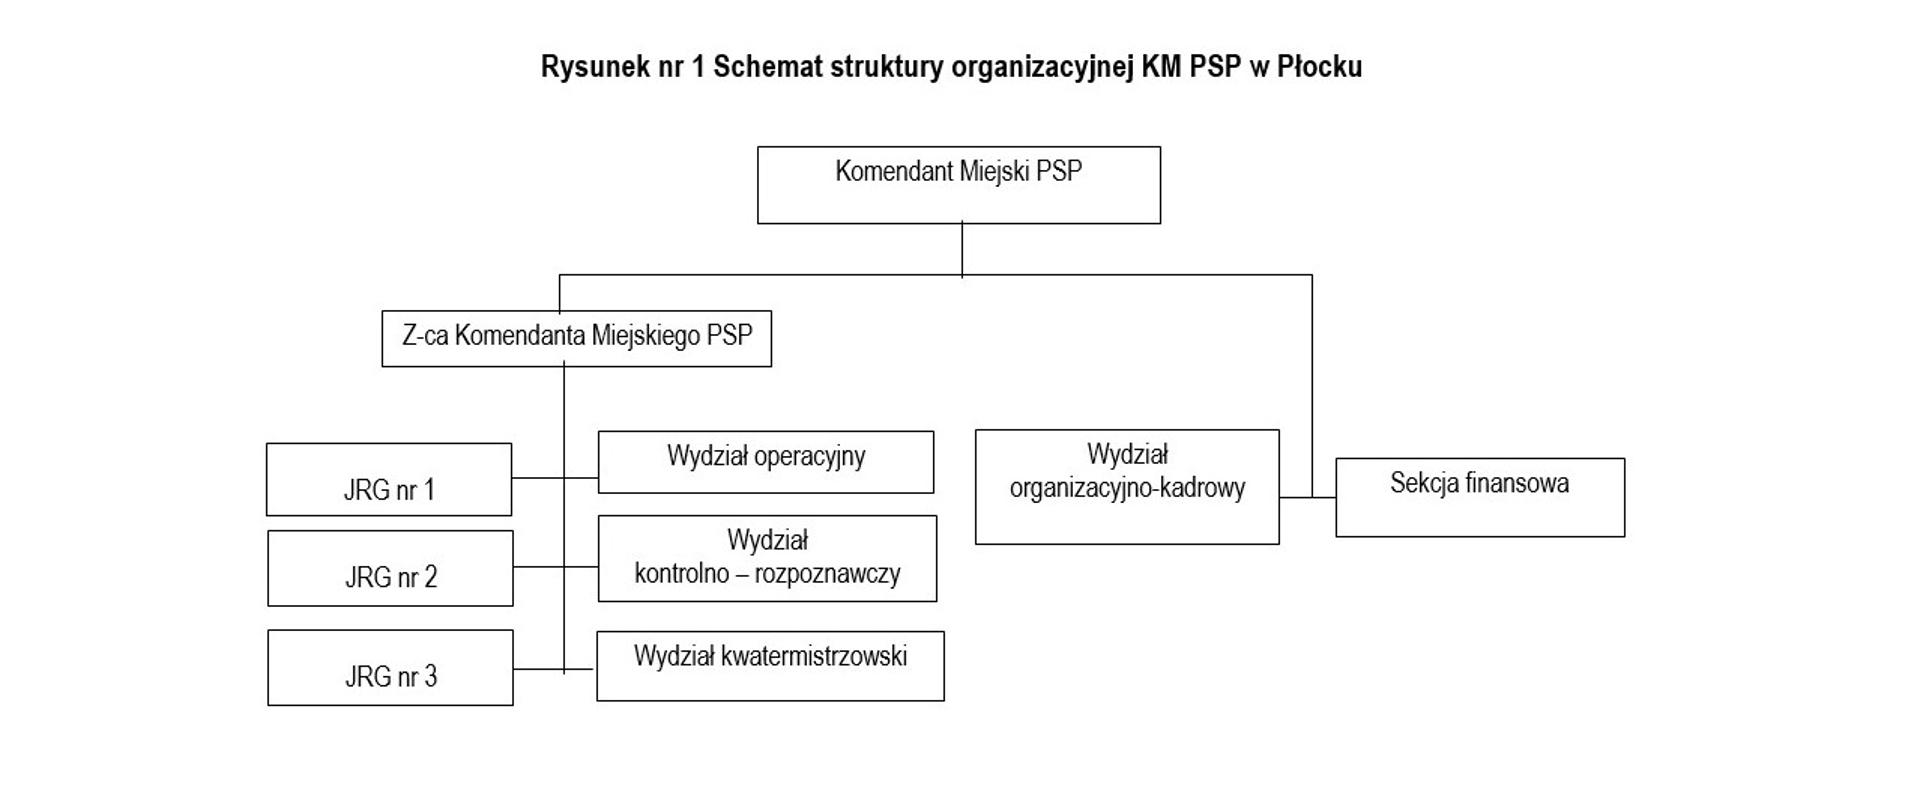 Na zdjęciu widoczny jest schemat organizacyjny KM PSP w Płocku przedstawiający strukturę komendy. Komendantowi Miejskiemu PSP w Płocku podlegają wydział organizacyjno-kadrowy oraz sekcja finansowa. Zastępcy Komendanta podlegają jednostki ratowniczo-gaśnicze, wydział operacyjny, wydział kontrolno-rozpoznawczy, wydział kwatermistrzowski.